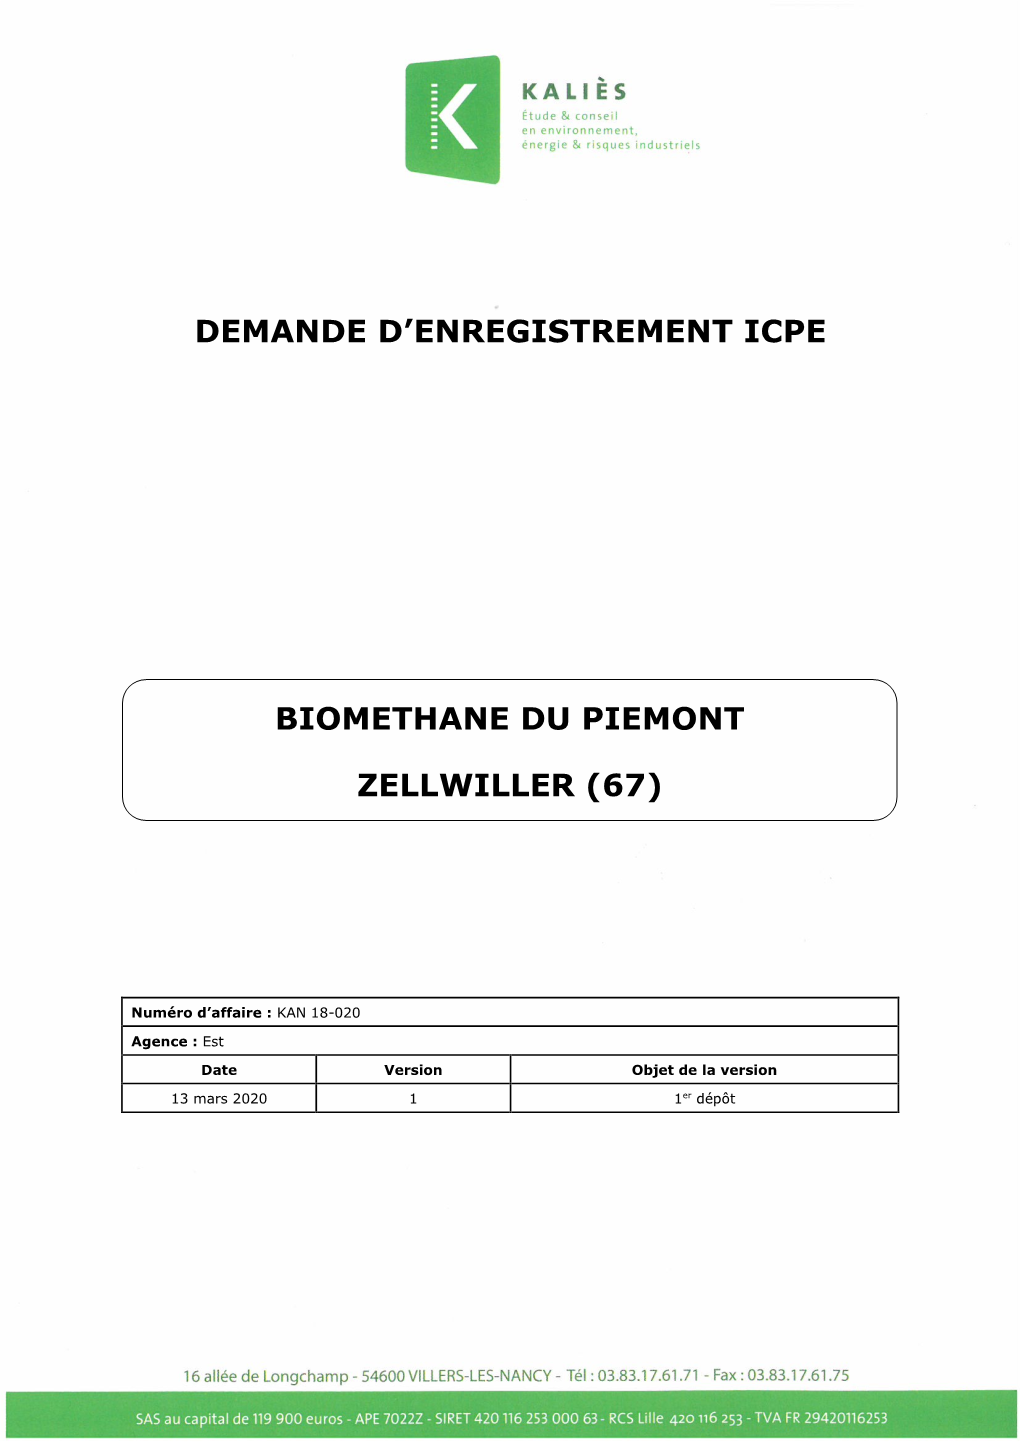 Biomethane Du Piemont Zellwiller (67)